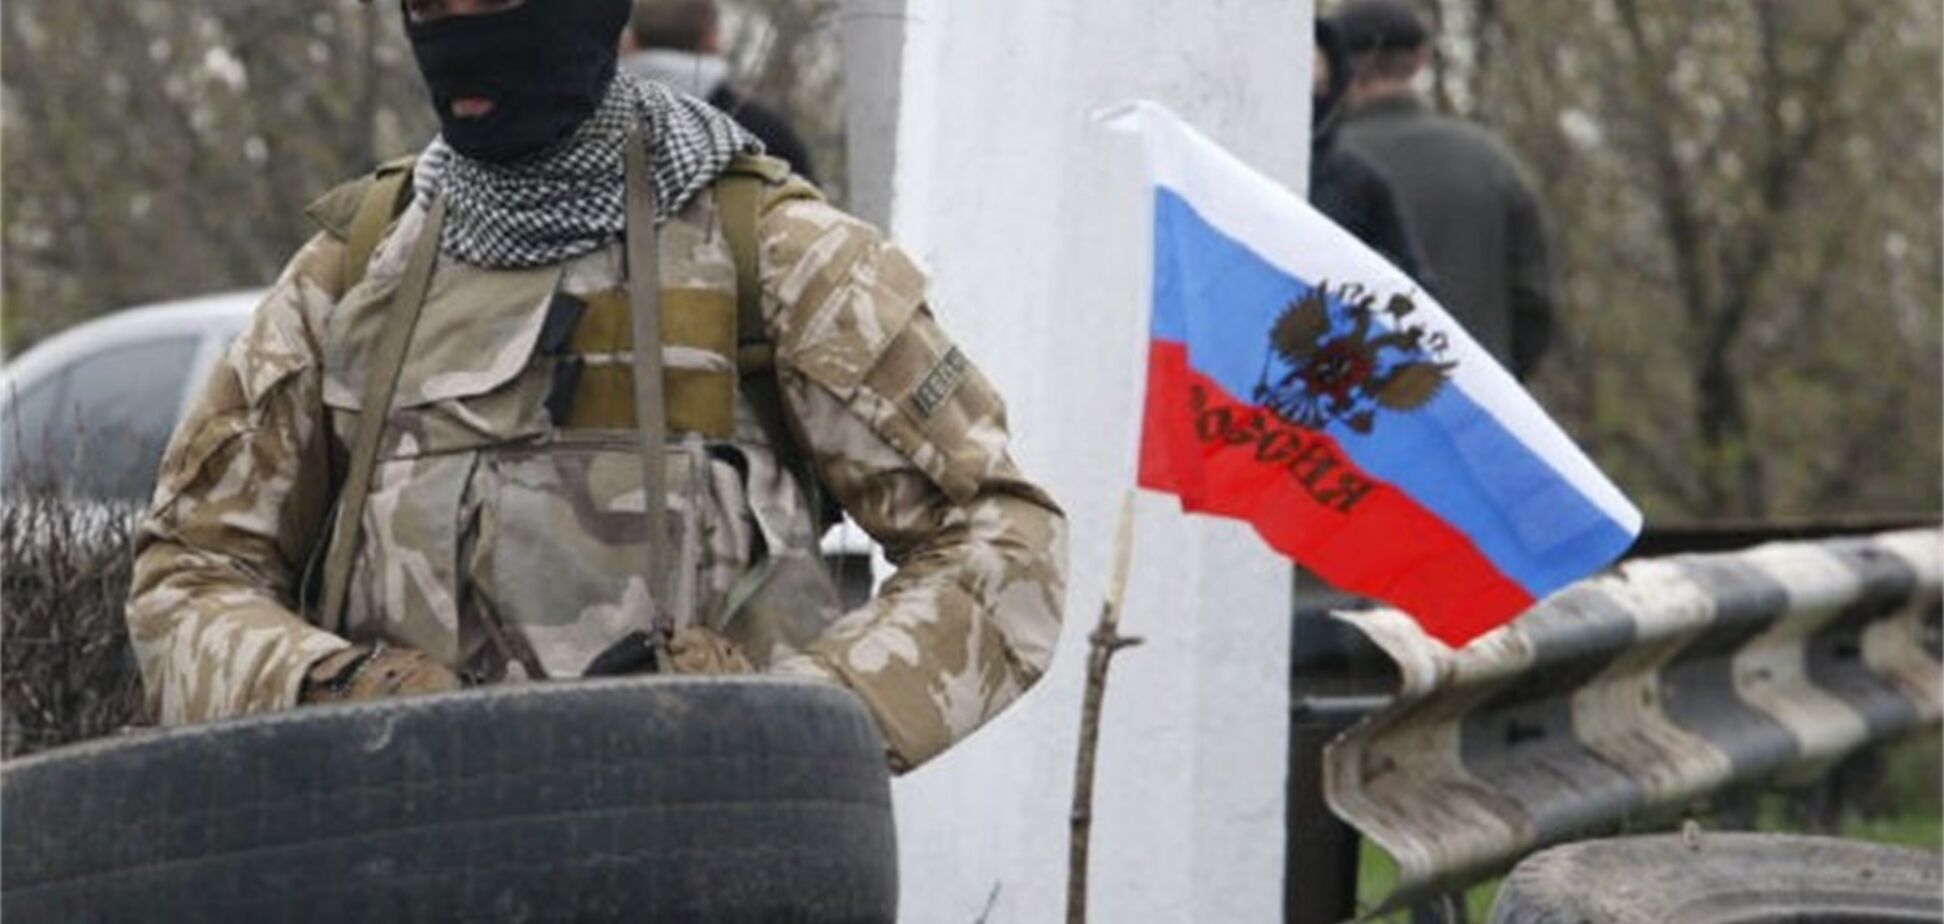 Deutsche Welle написала про 'громадянську війну' в Україні: МЗС відреагував